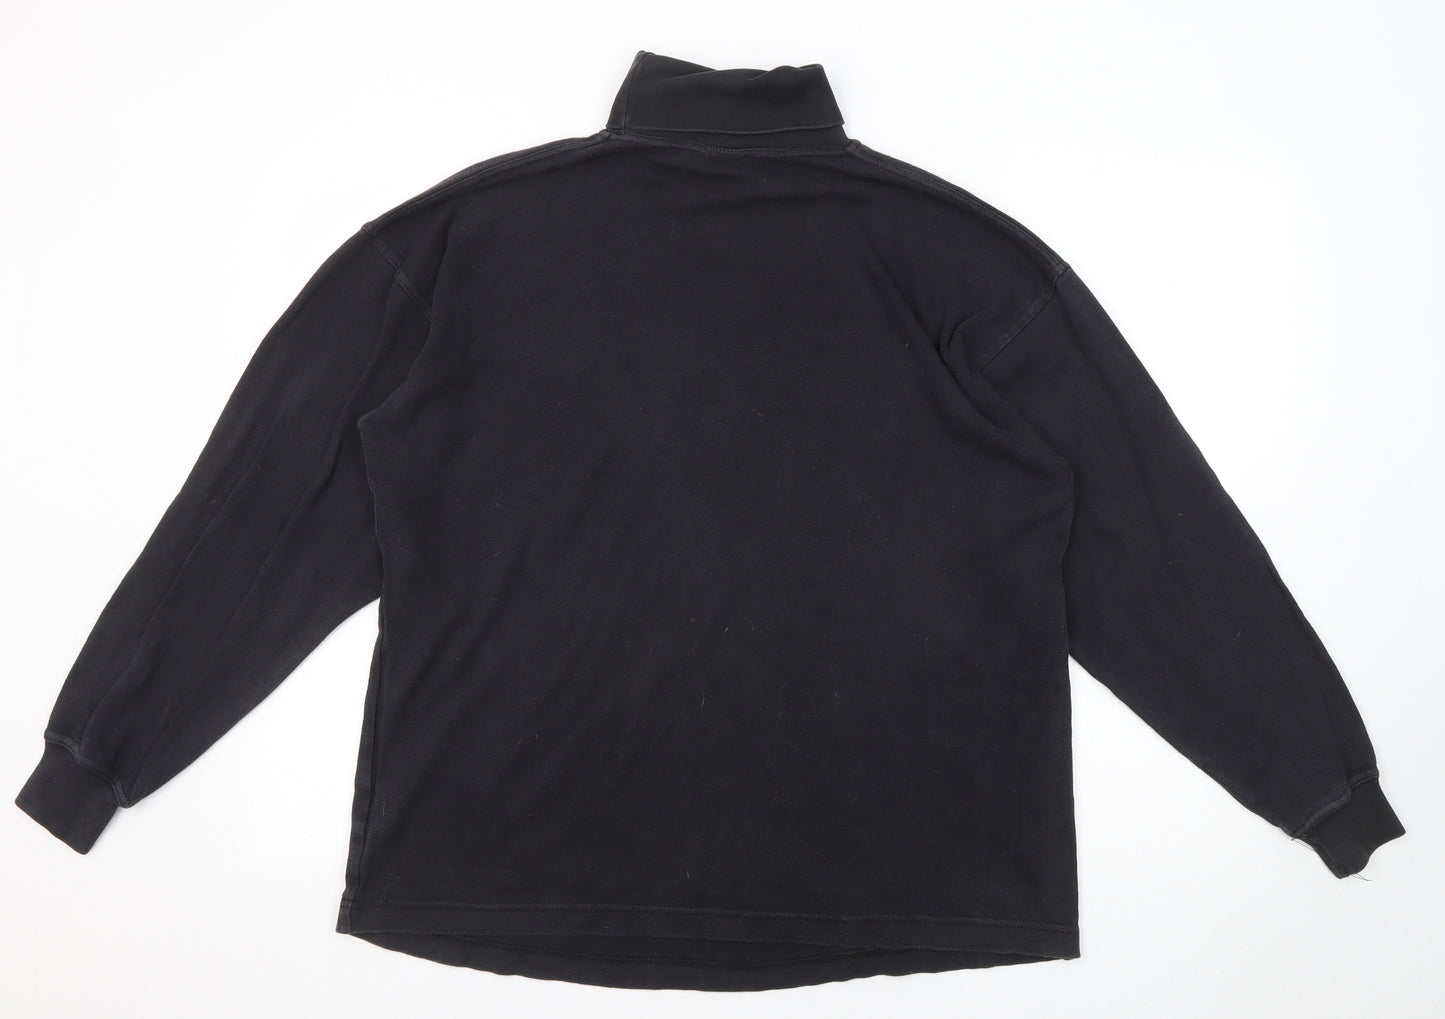 C&A Mens Black Cotton Pullover Sweatshirt Size M